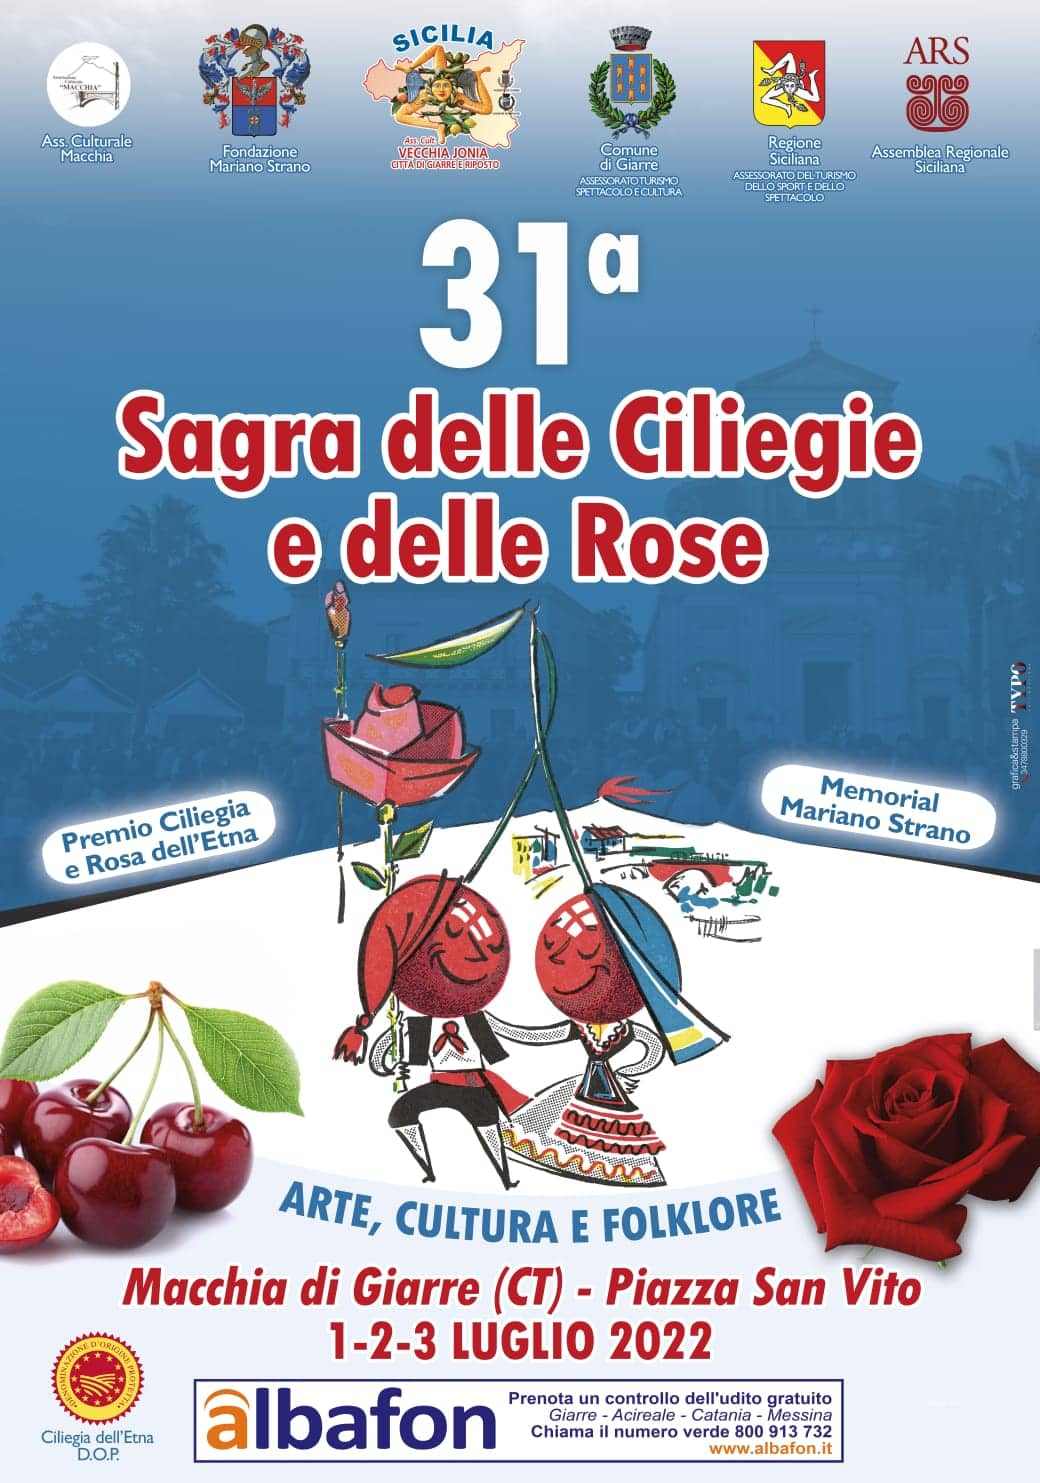 Macchia di Giarre (CT)
"31^ Sagra delle Ciliegie e delle Rose"
1-2-3 Luglio 2022